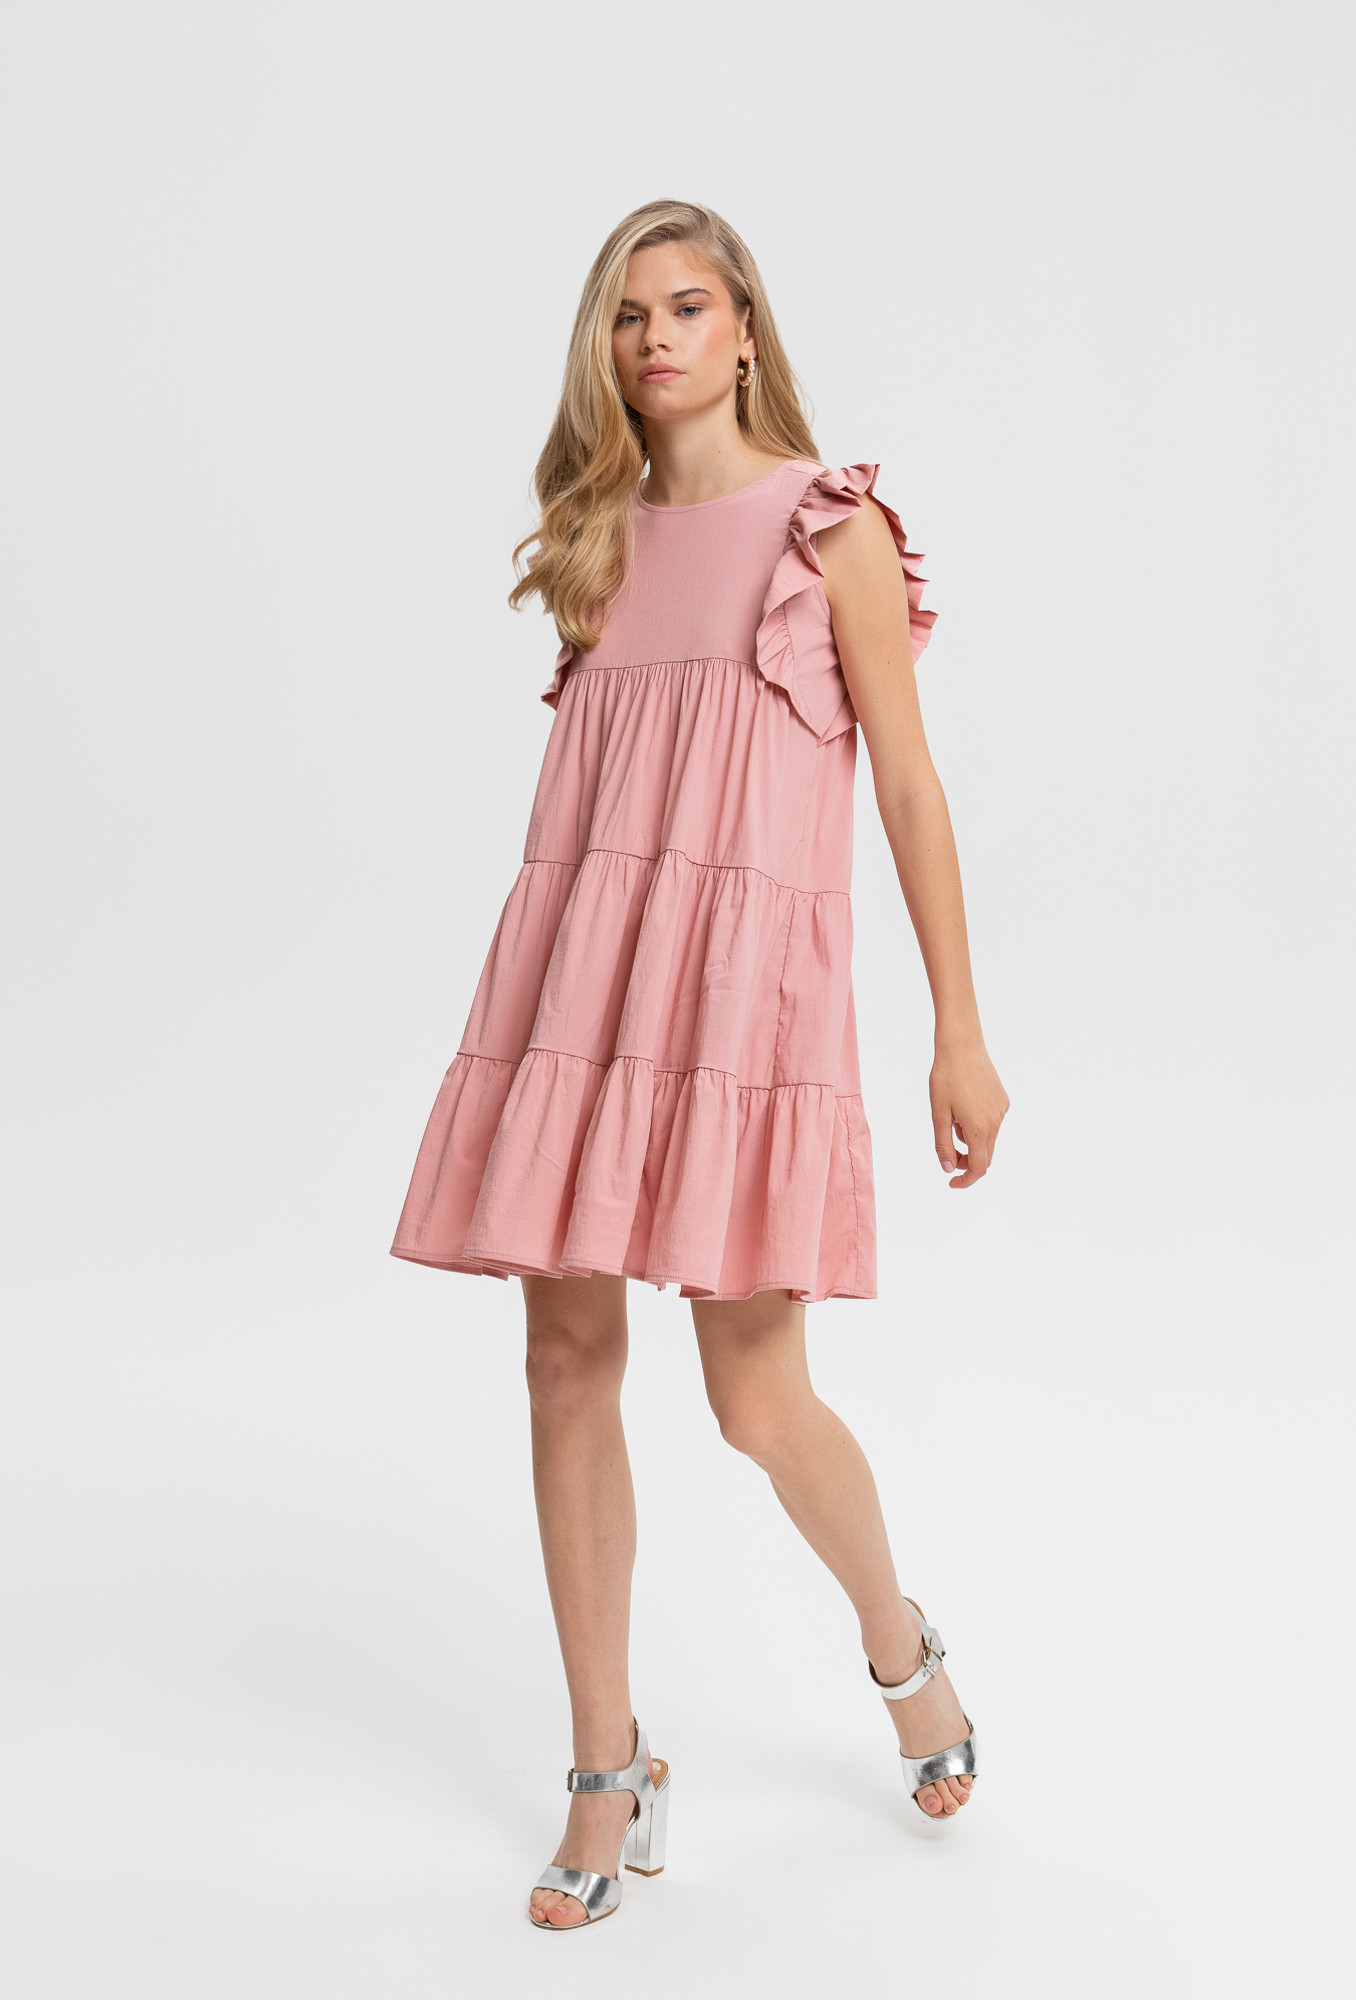 Monnari Šaty Mini šaty s volánem růžové 38